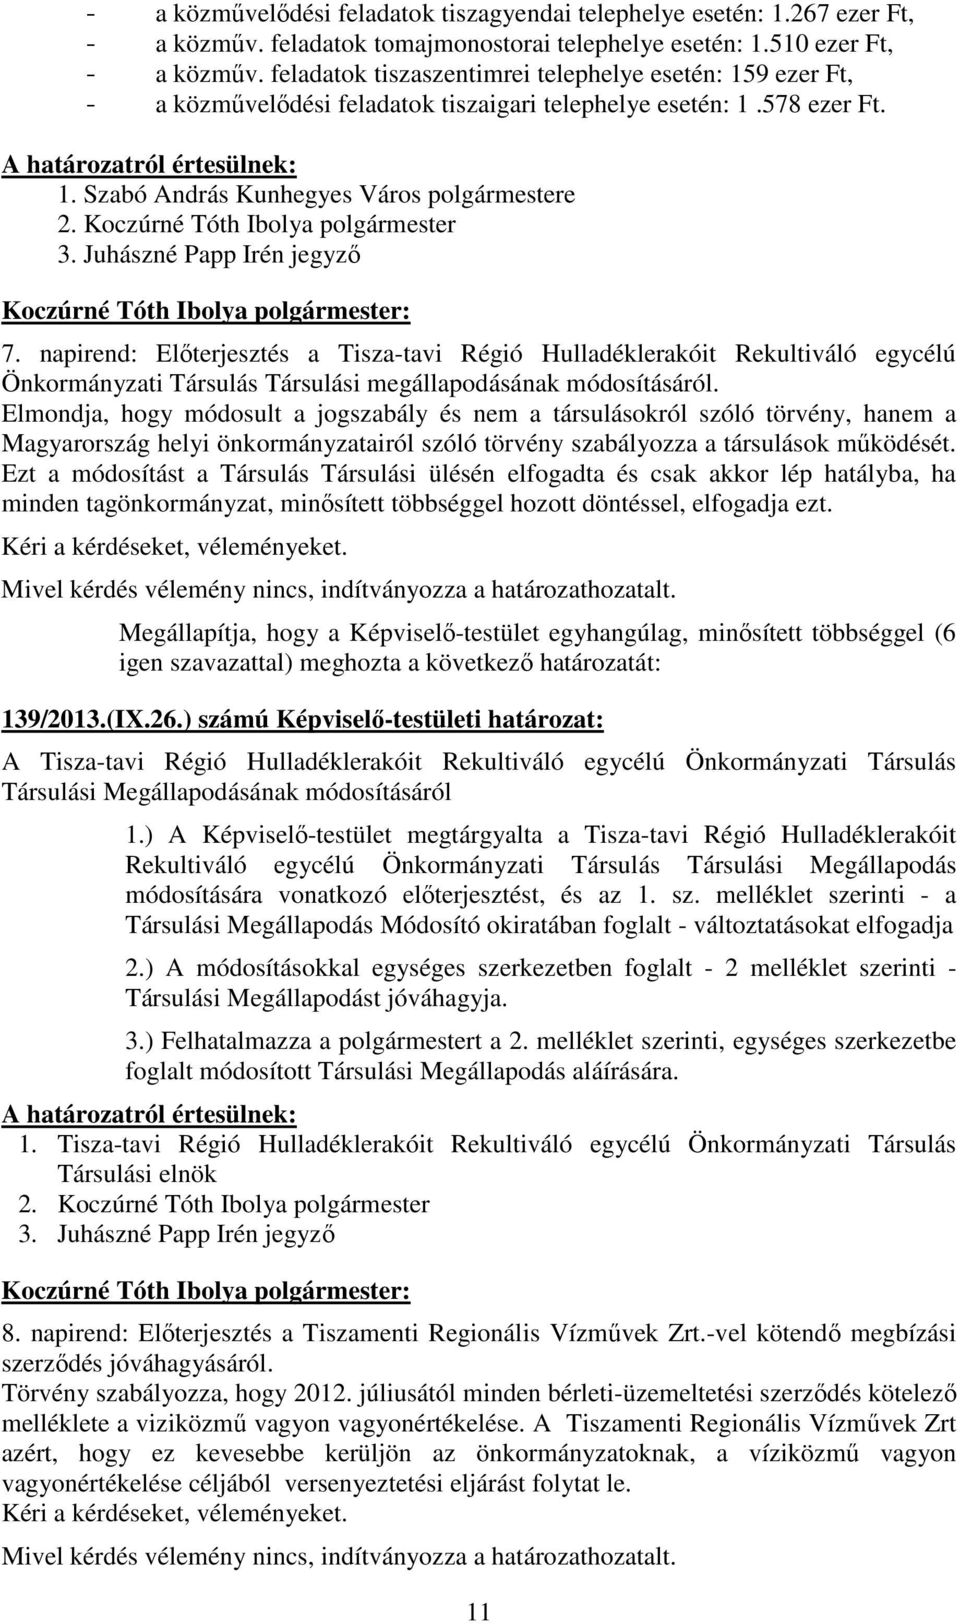 napirend: Elıterjesztés a Tisza-tavi Régió Hulladéklerakóit Rekultiváló egycélú Önkormányzati Társulás Társulási megállapodásának módosításáról.